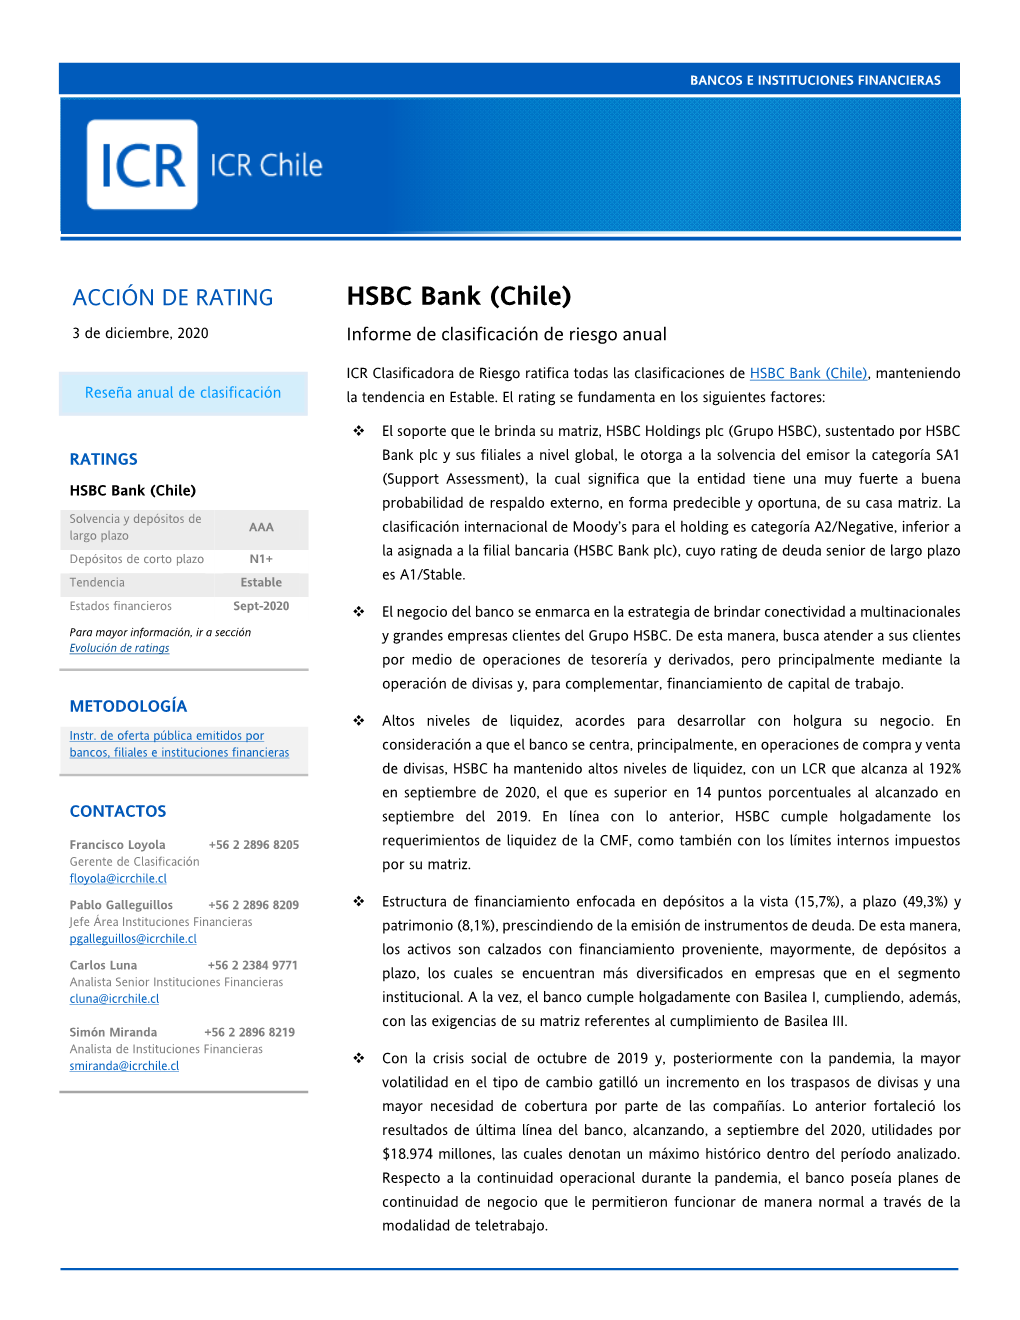 HSBC Bank (Chile) 3 De Diciembre, 2020 Informe De Clasificación De Riesgo Anual